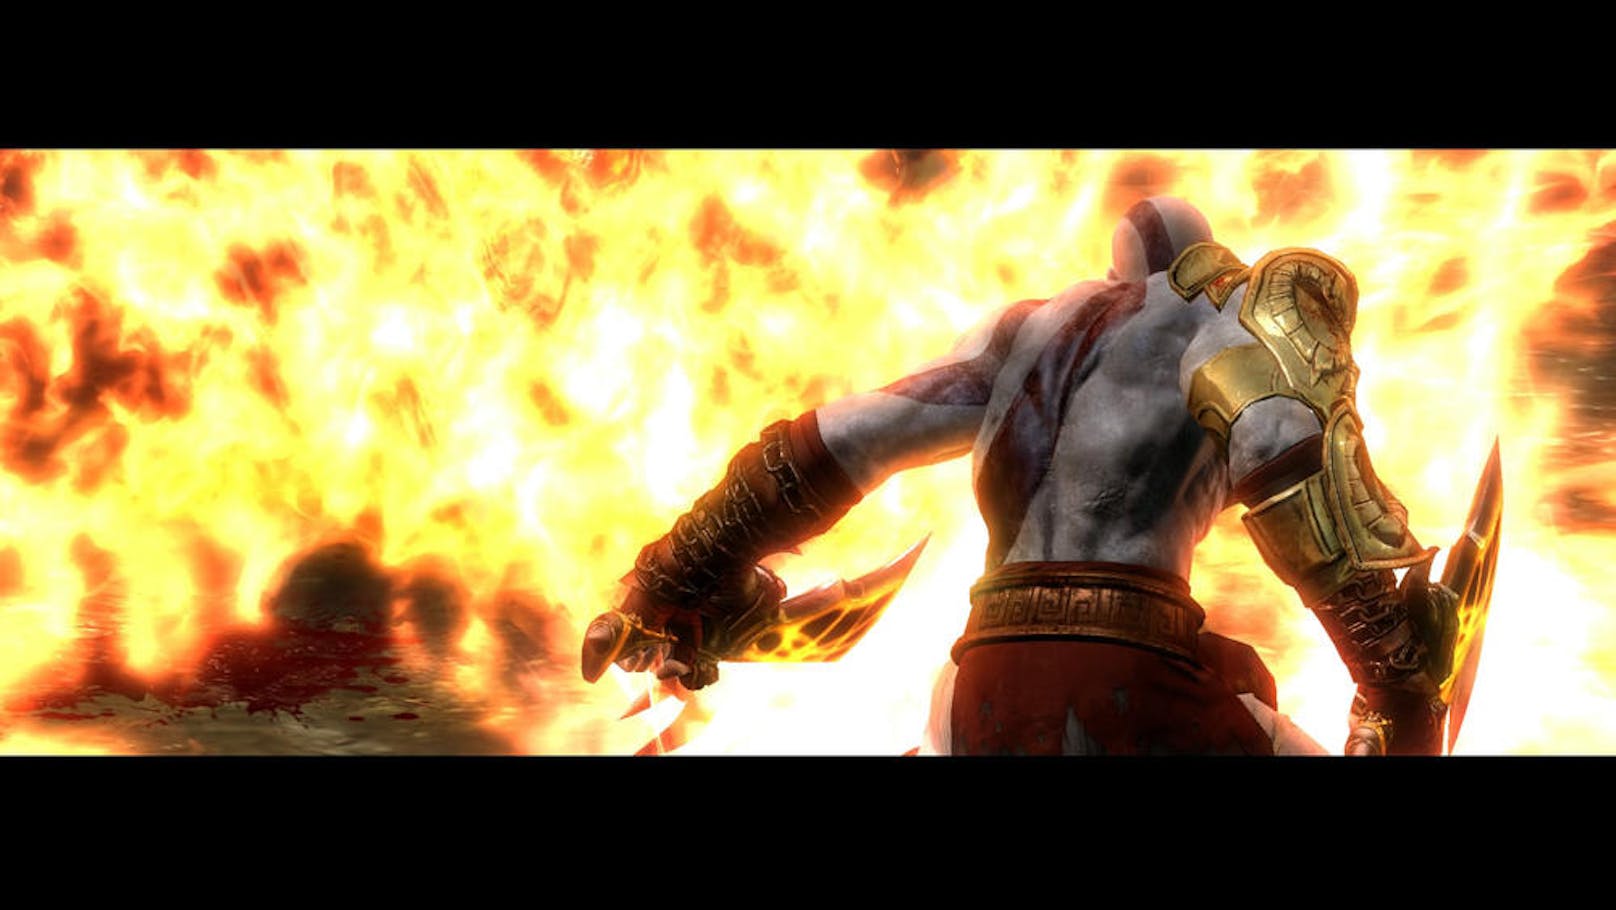  <a href="https://www.heute.at/digital/games/story/God-of-War-3-Remastered-im-Test--Kratos-tobt-wieder-19962743" target="_blank">God of War 3 Remastered</a>